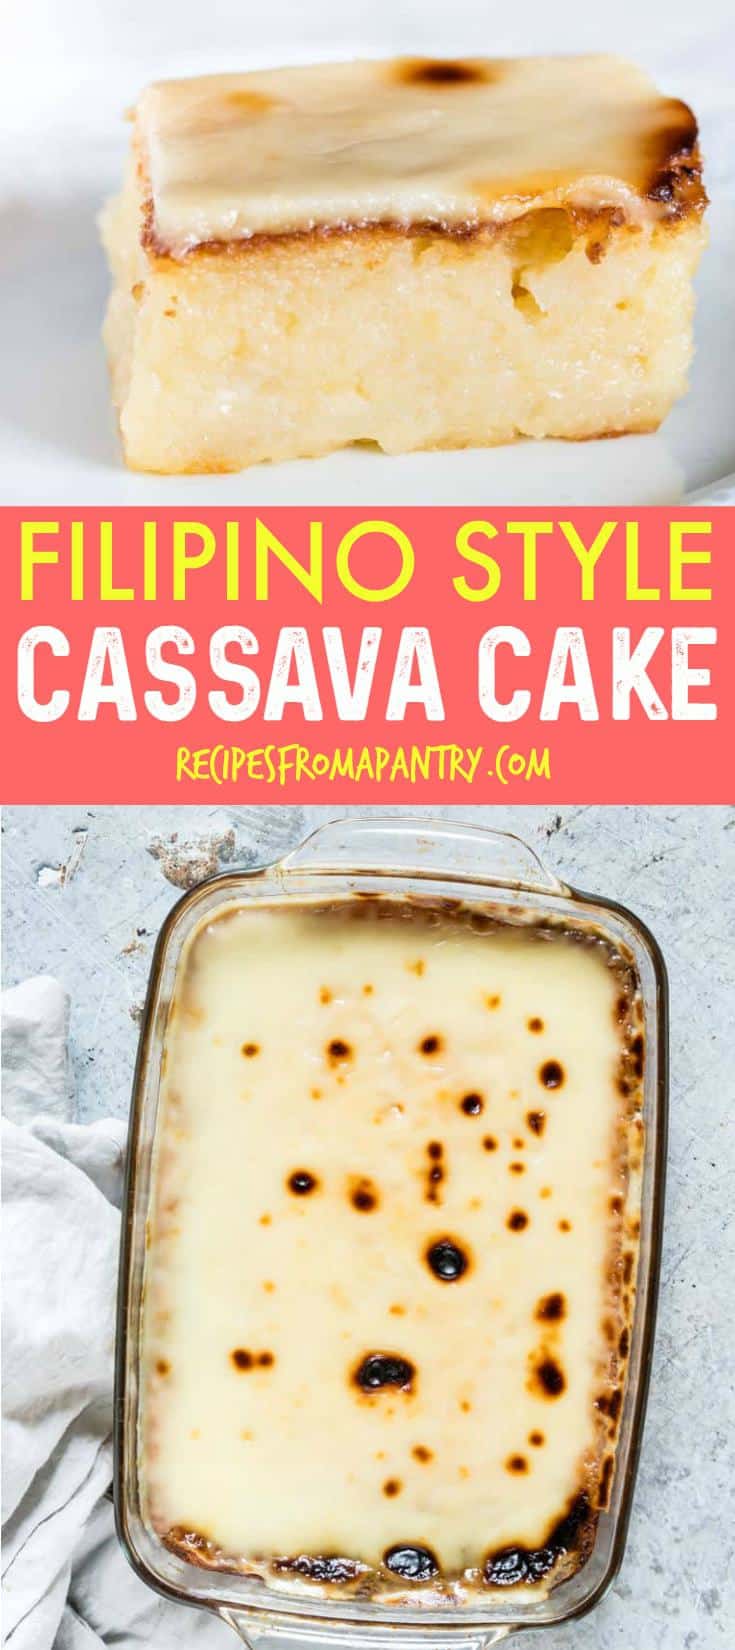 FILIPINO STYLE CASSAVA CAKE